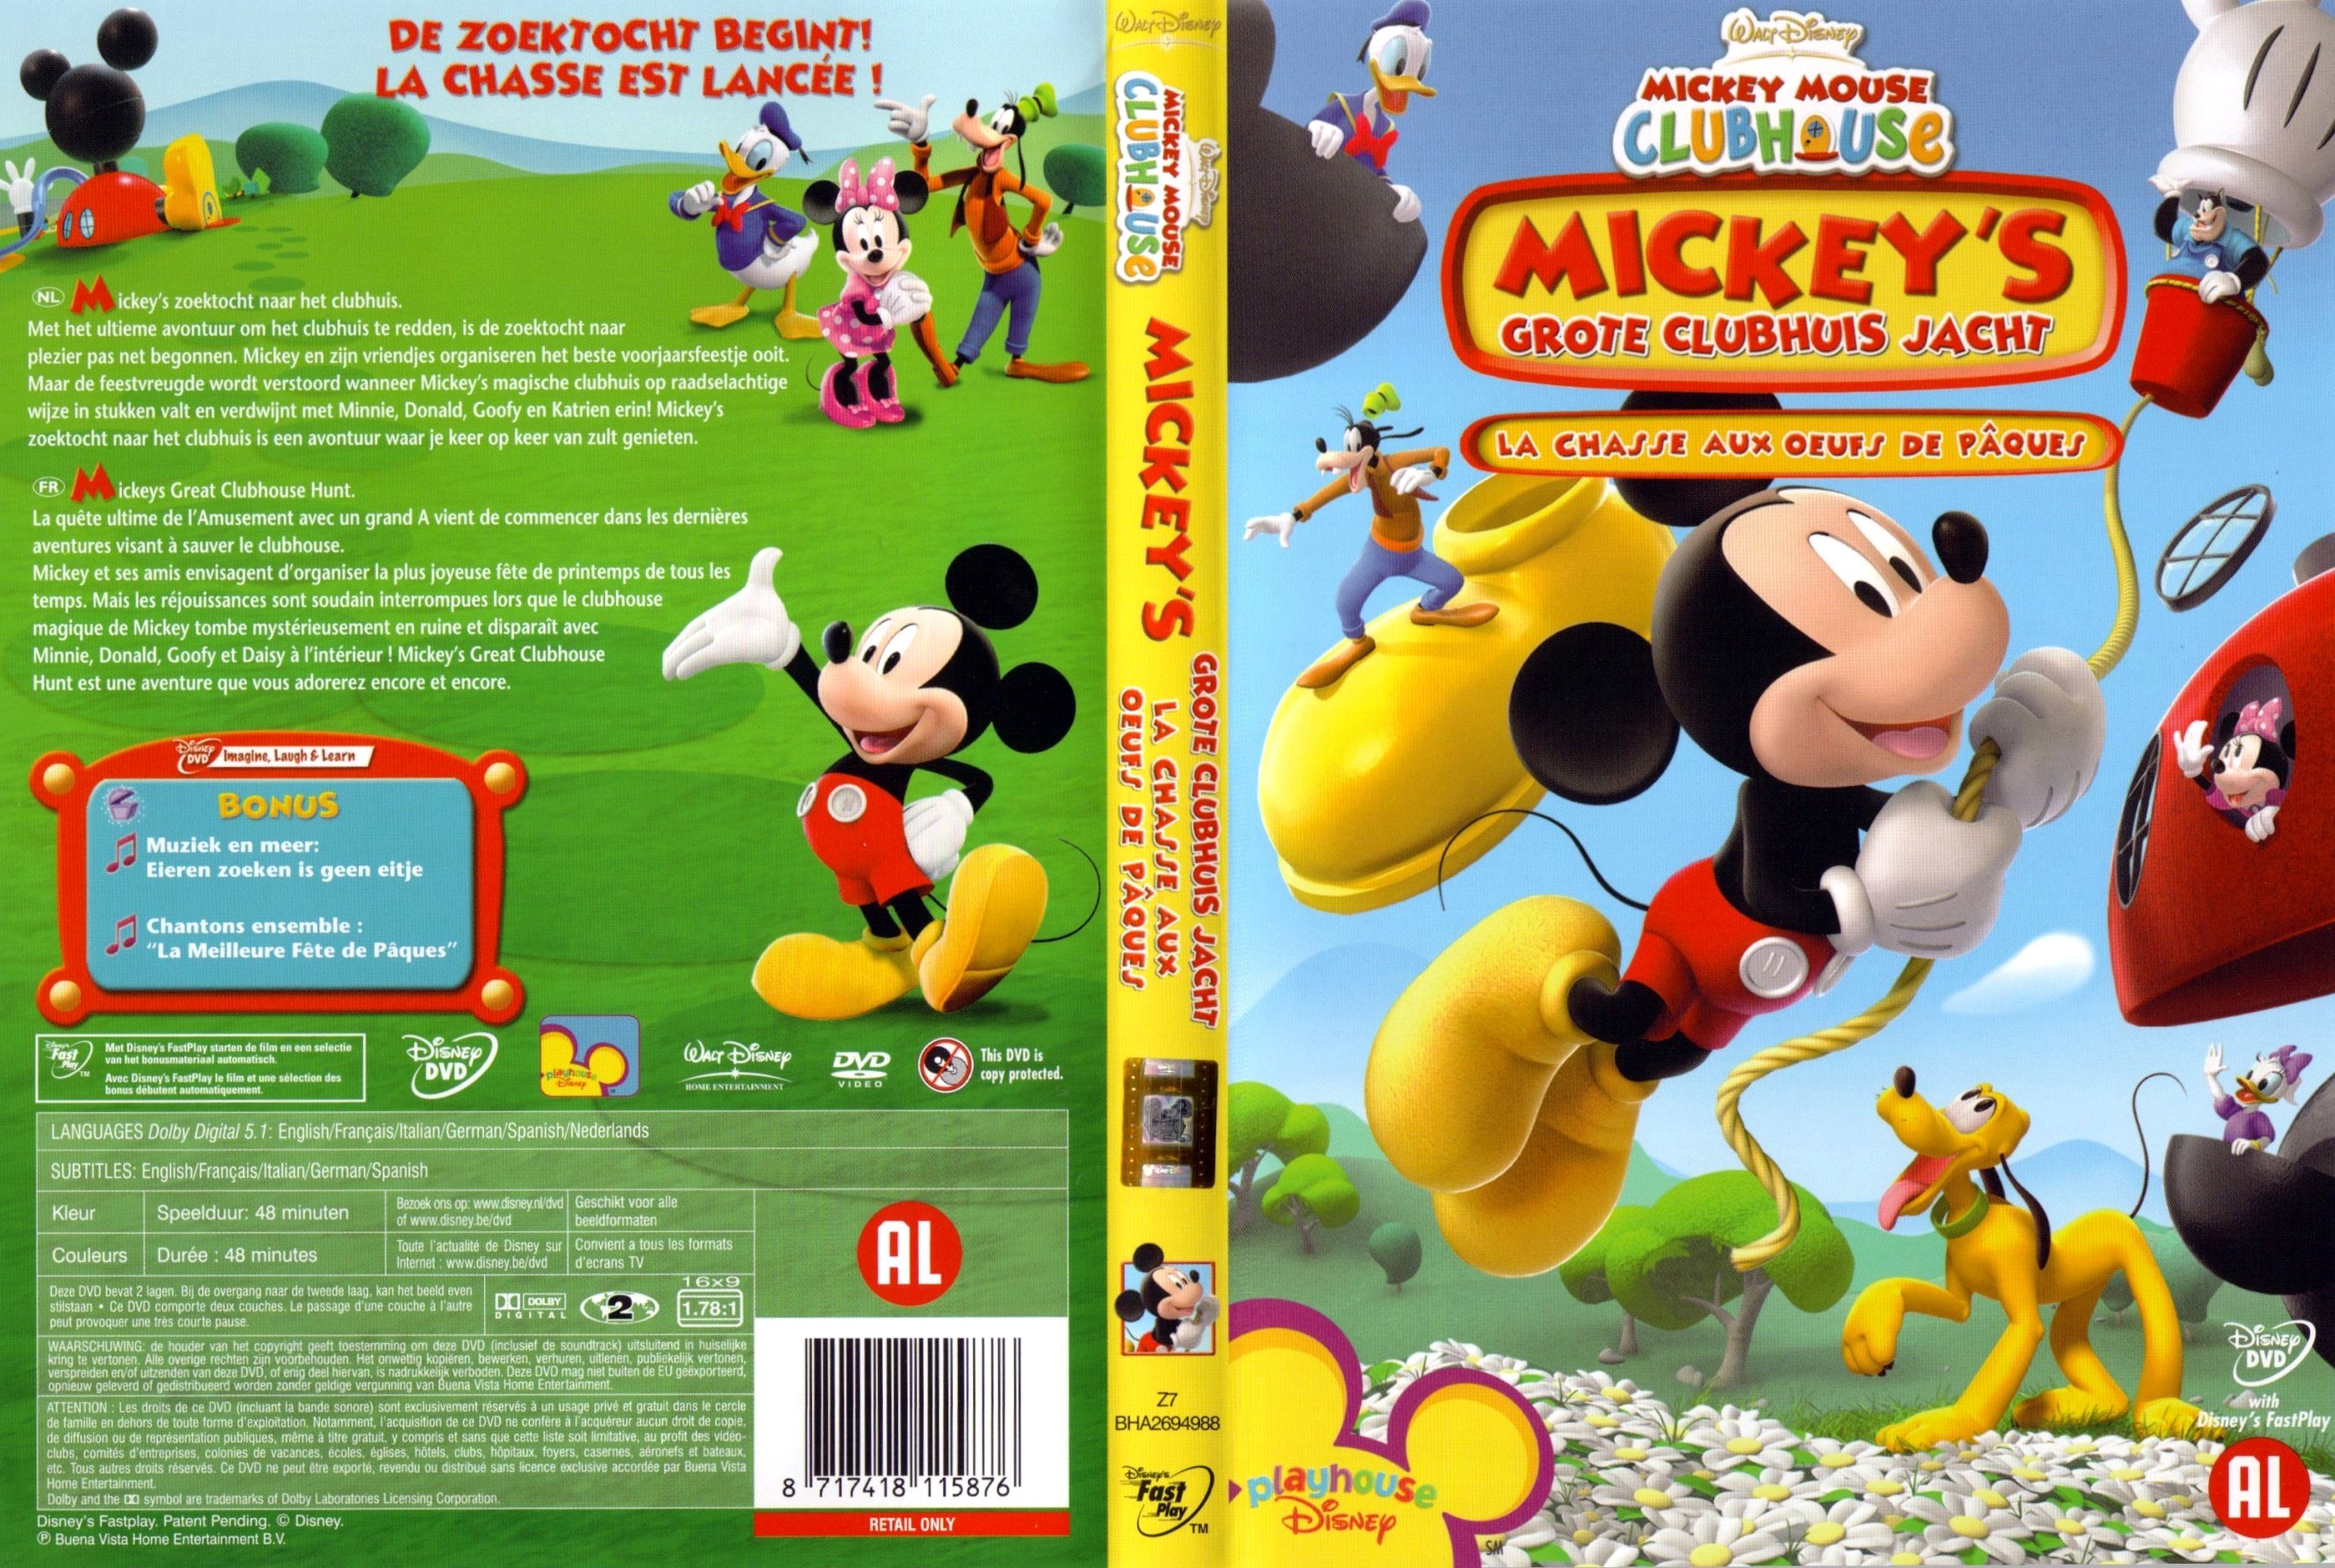 Jaquette DVD Mickey et la chasse aux oeufs de Paques